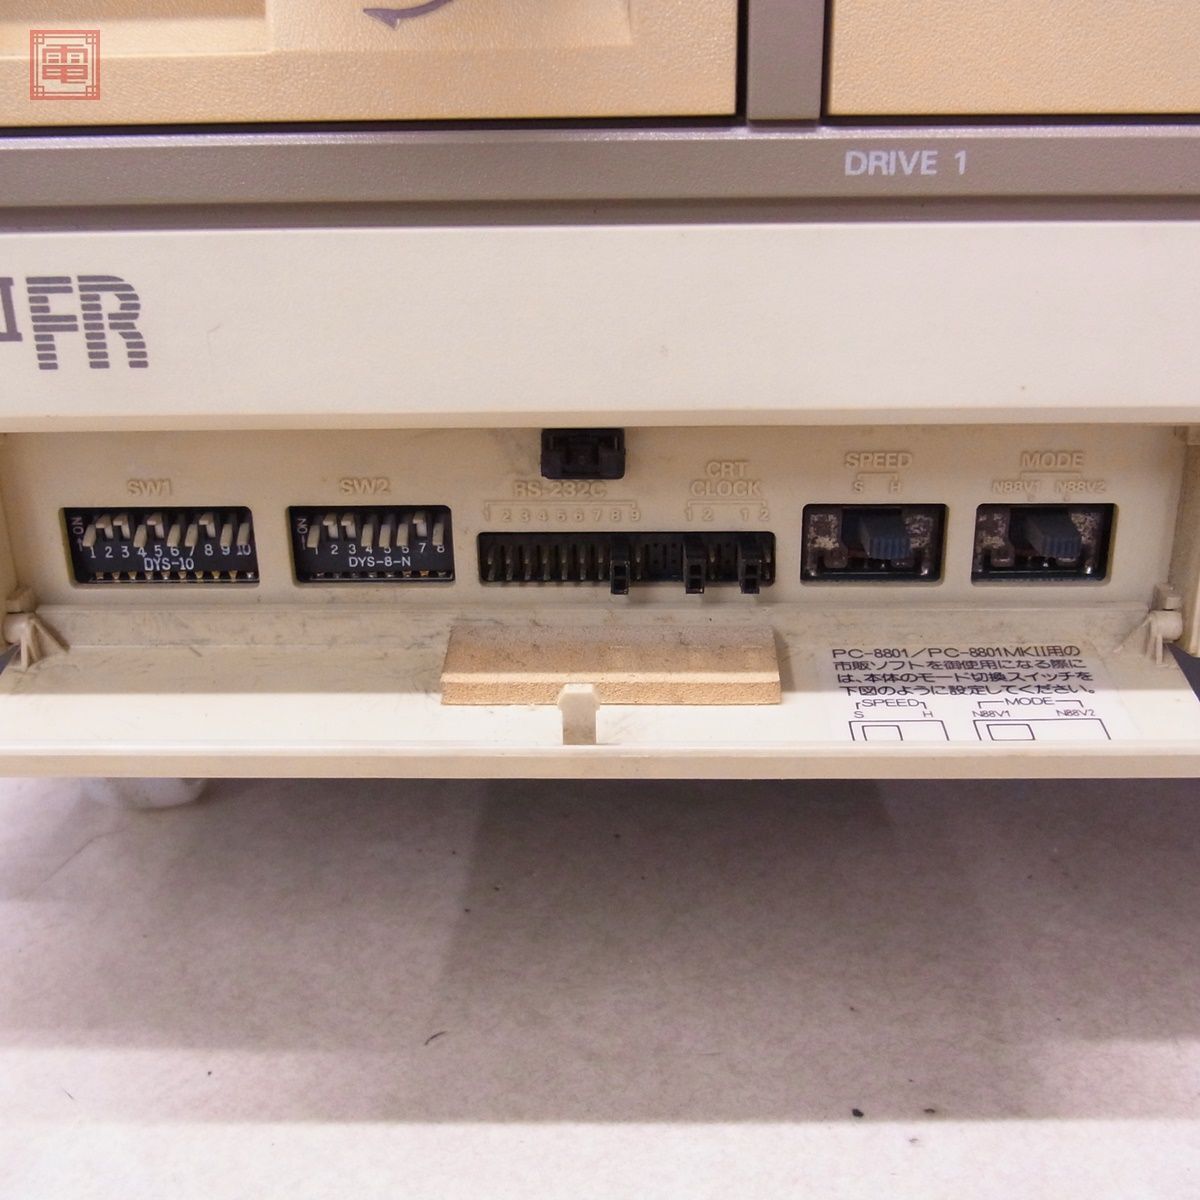  рабочий товар NEC PC-8801MKIIFR корпус клавиатура * в подарок soft есть mkIIFR Япония электрический с дефектом [40